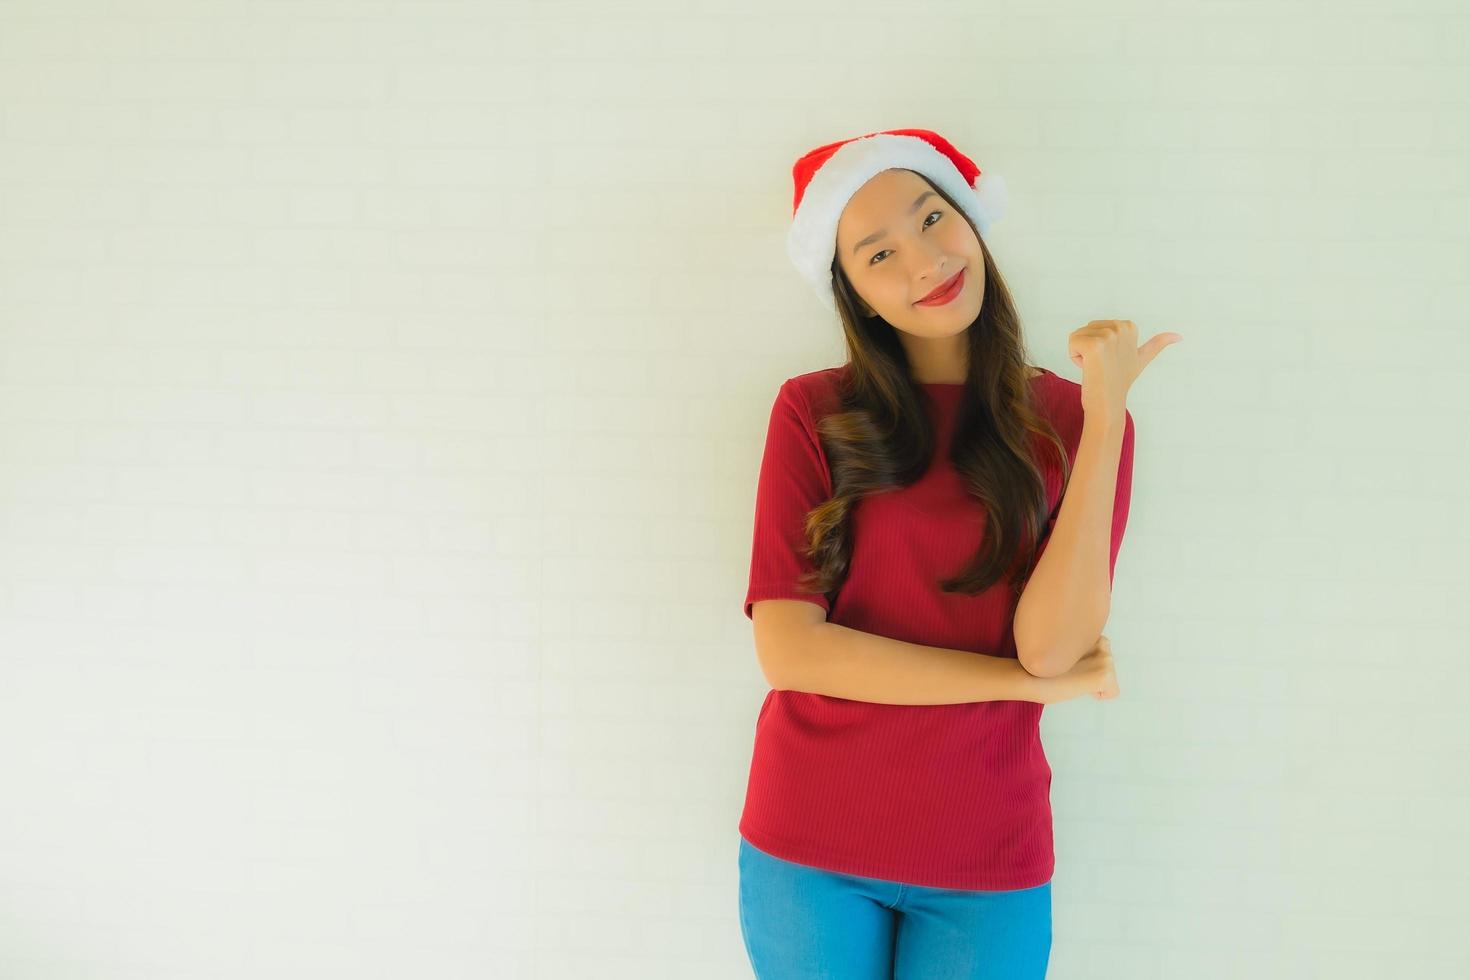 Retrato de hermosas mujeres asiáticas jóvenes vistiendo gorro de Papá Noel para la celebración de Navidad foto